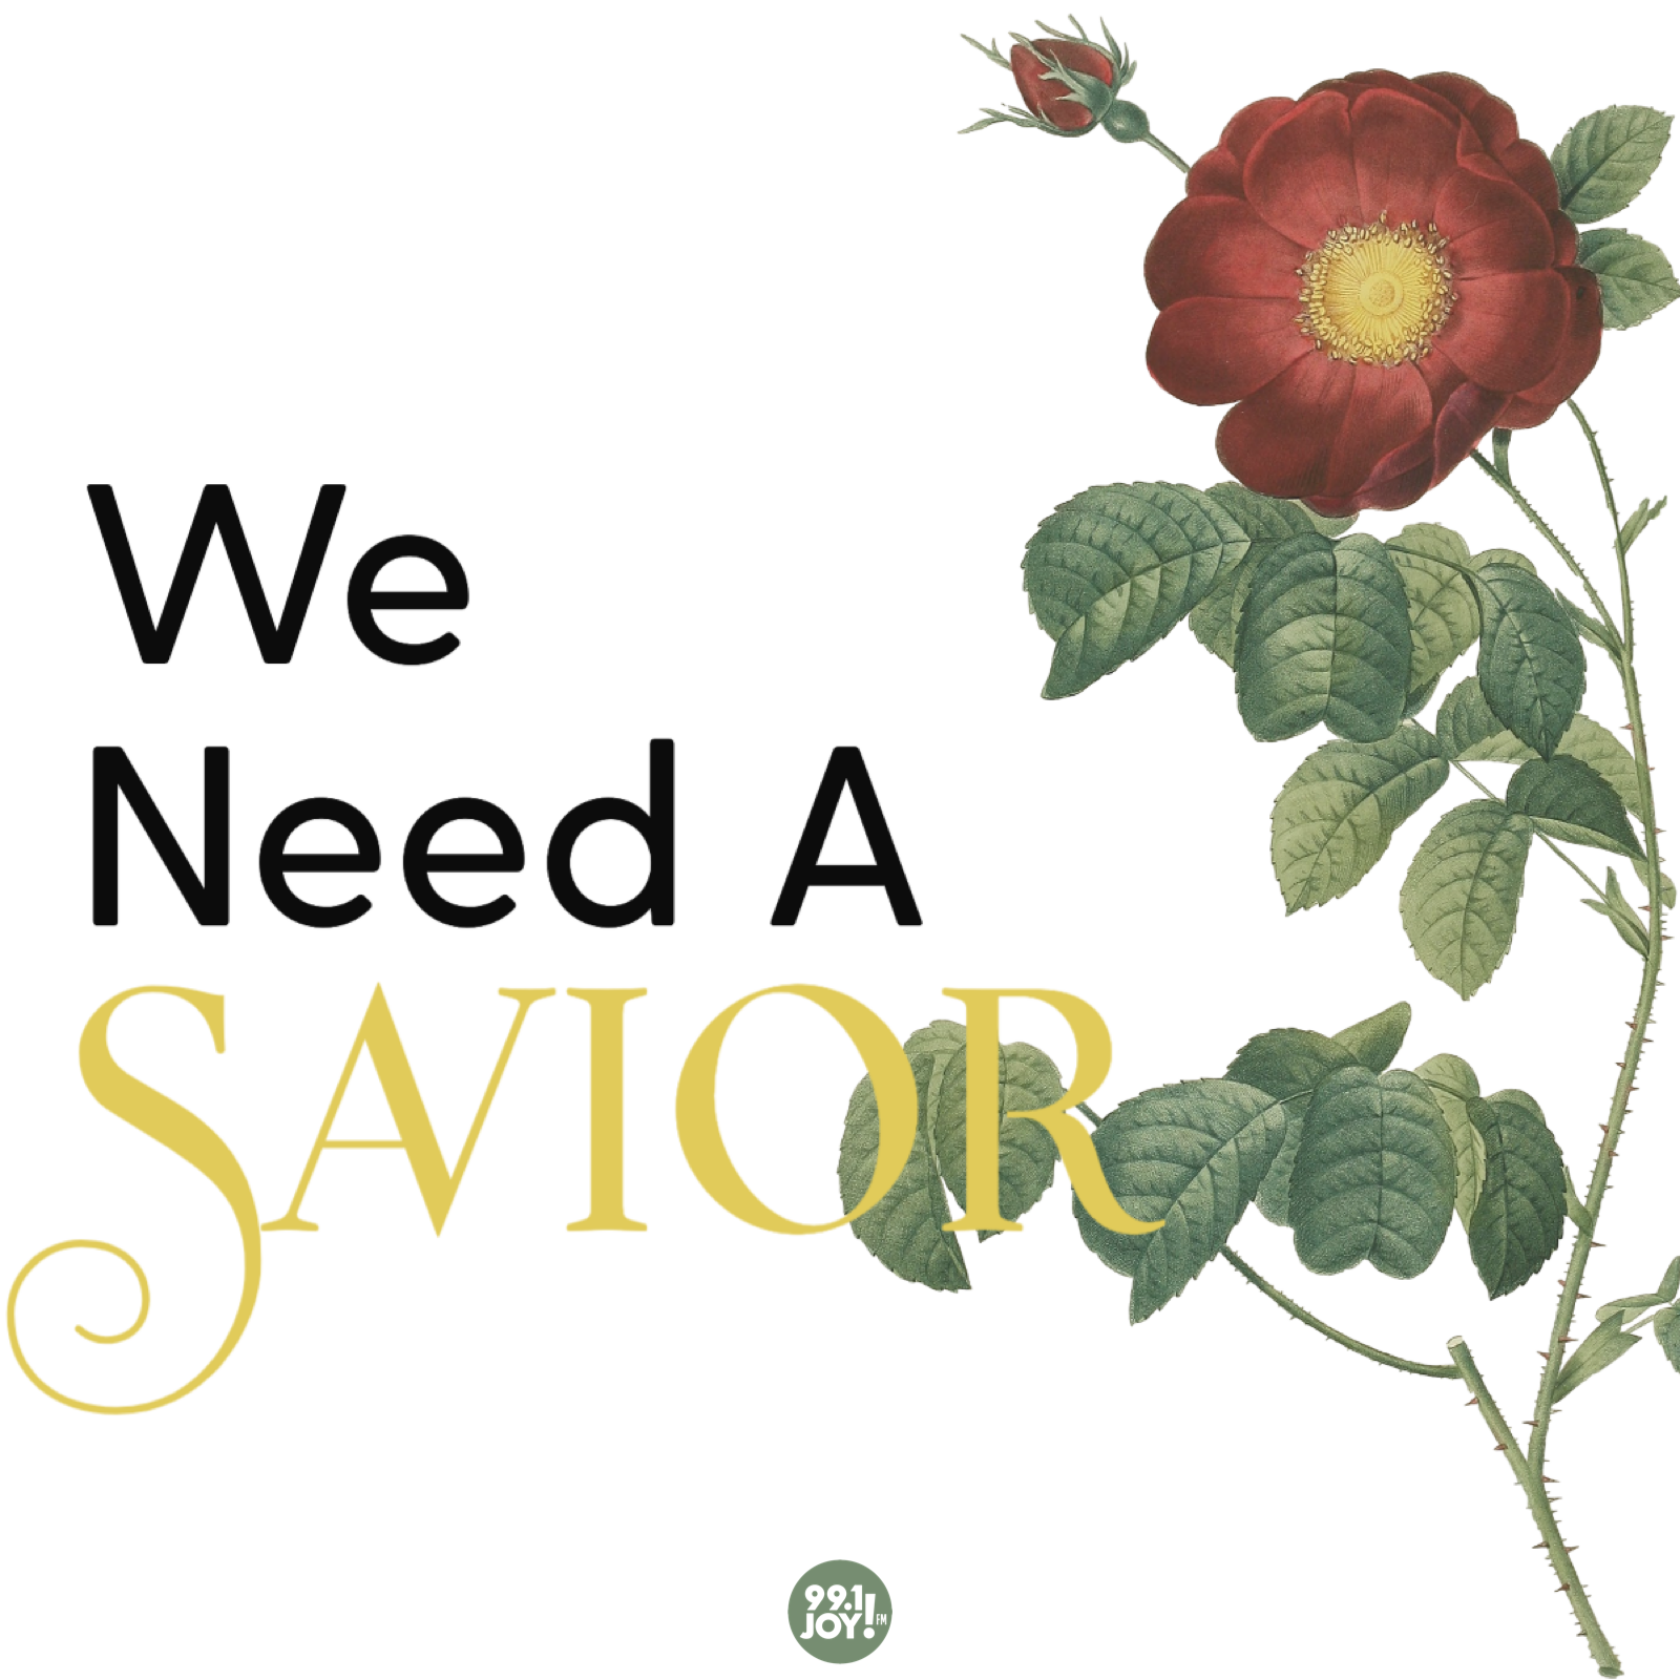 We Need A Savior